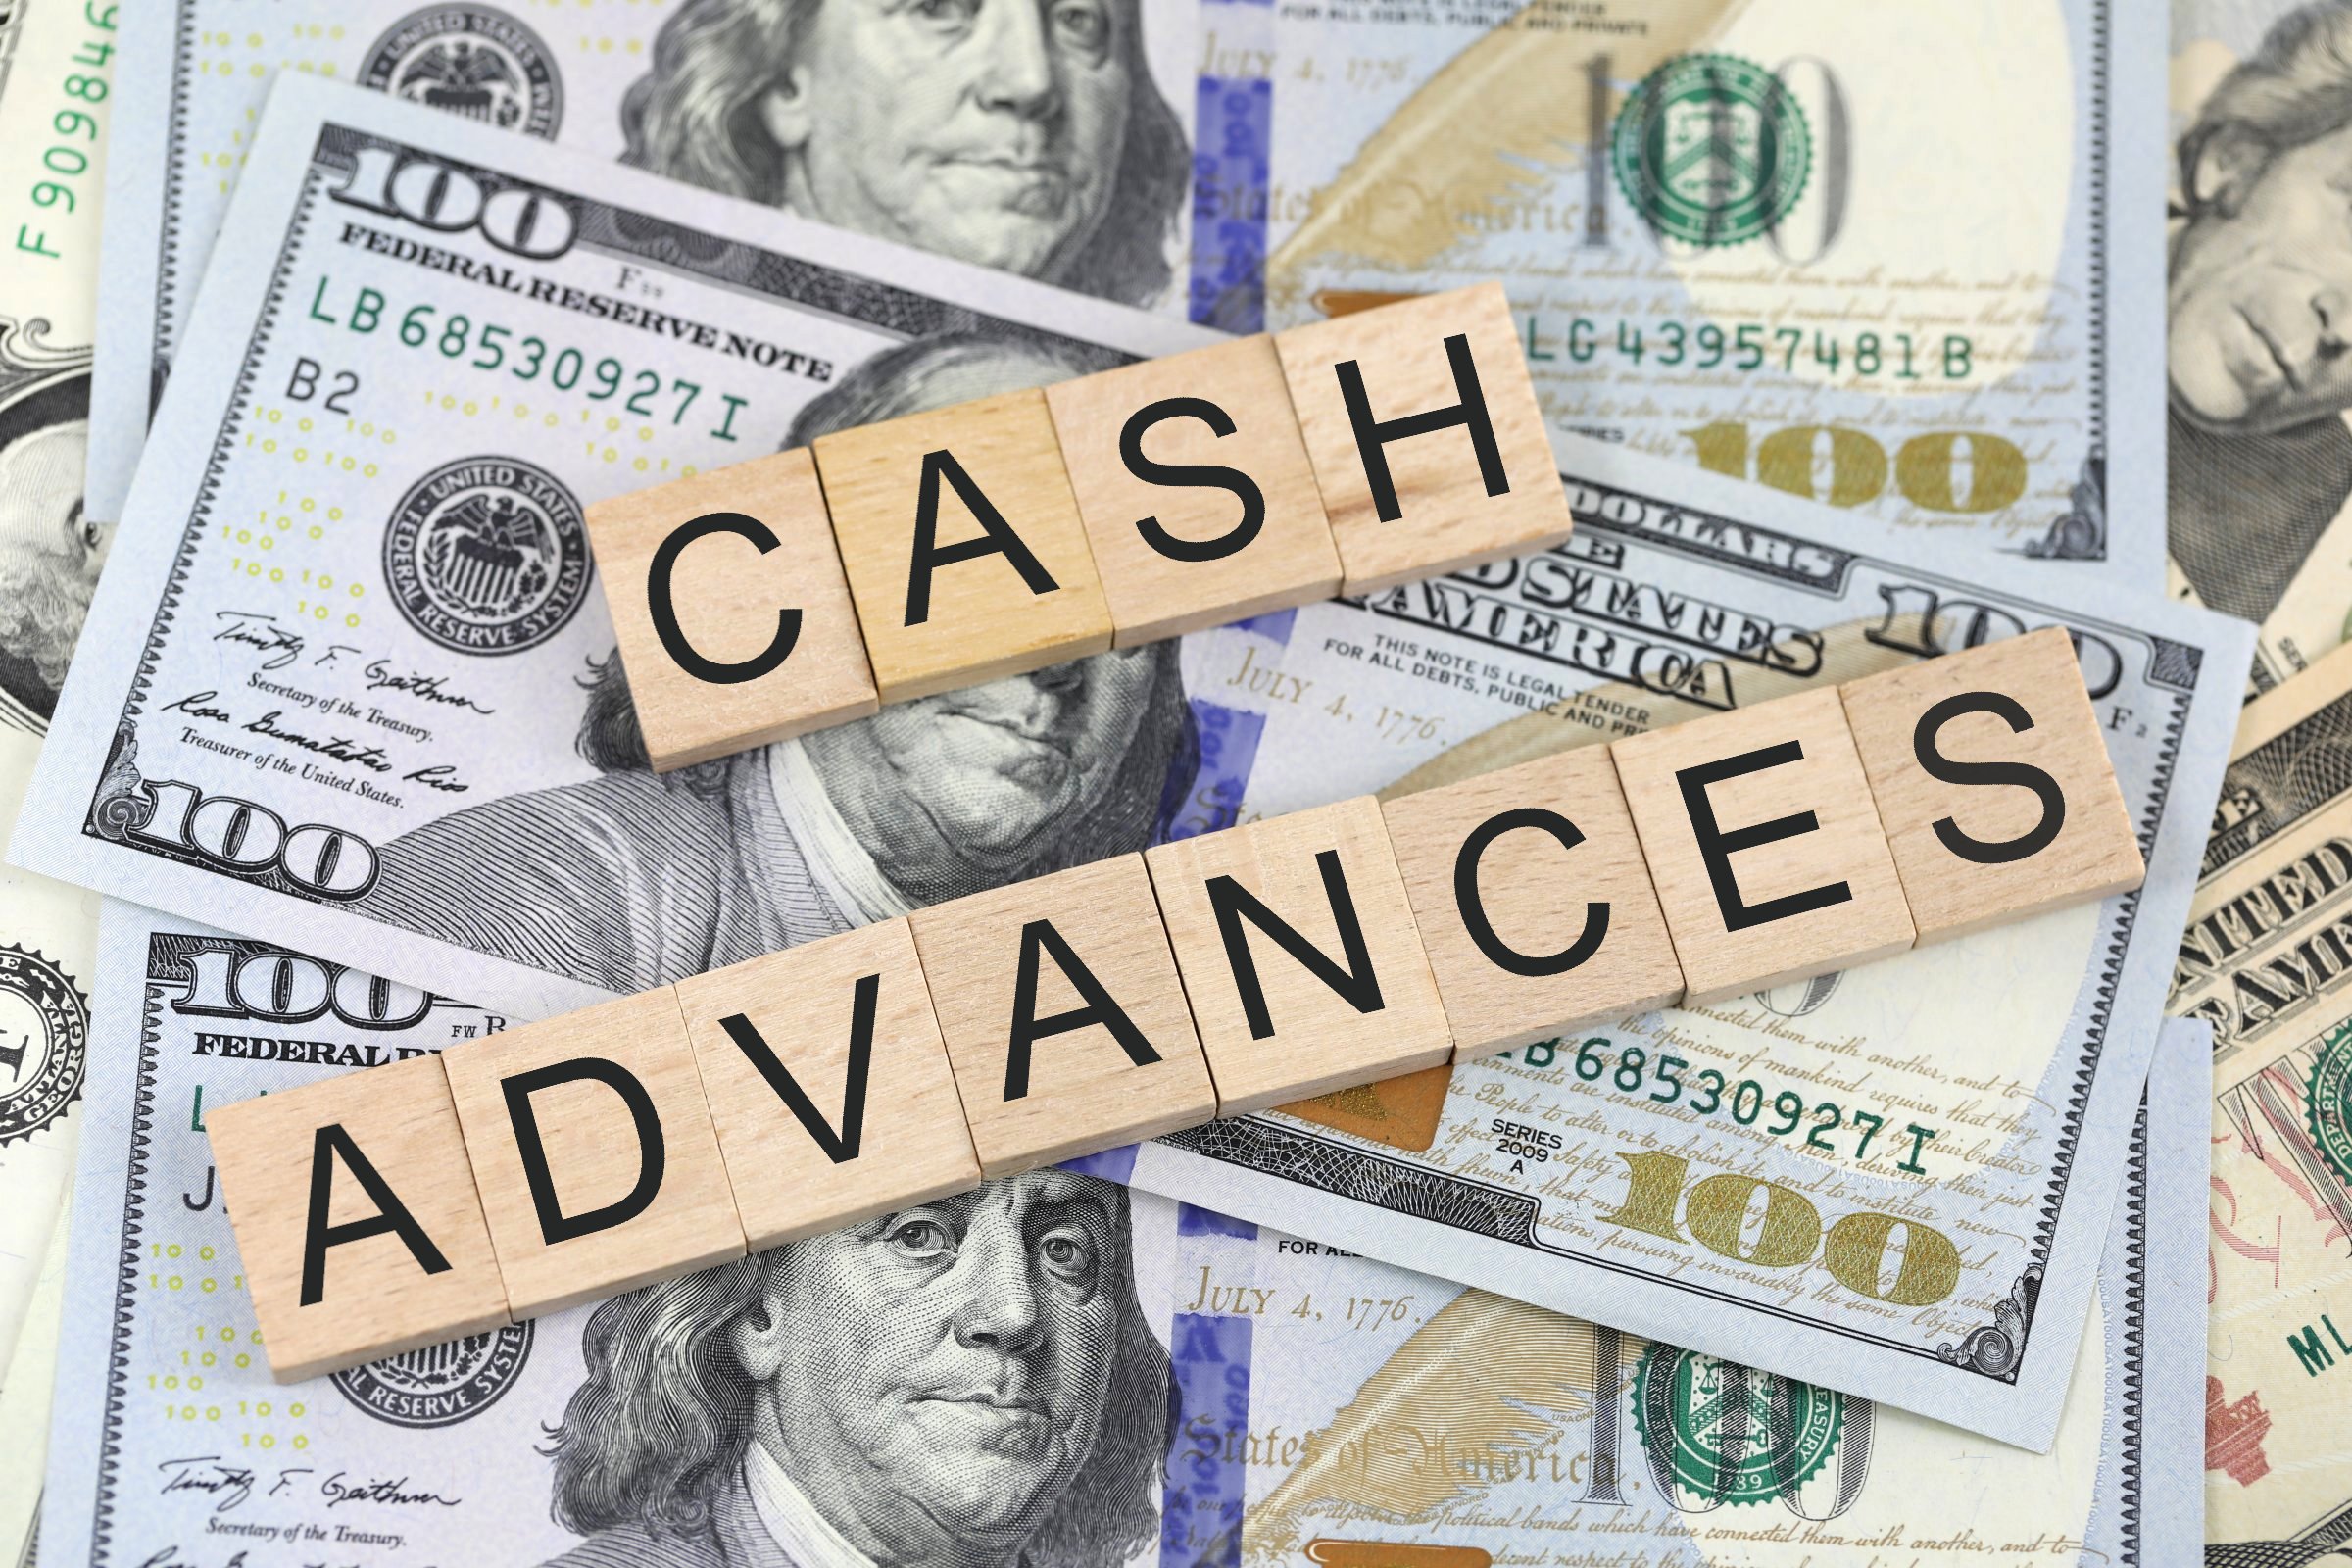 cash advances